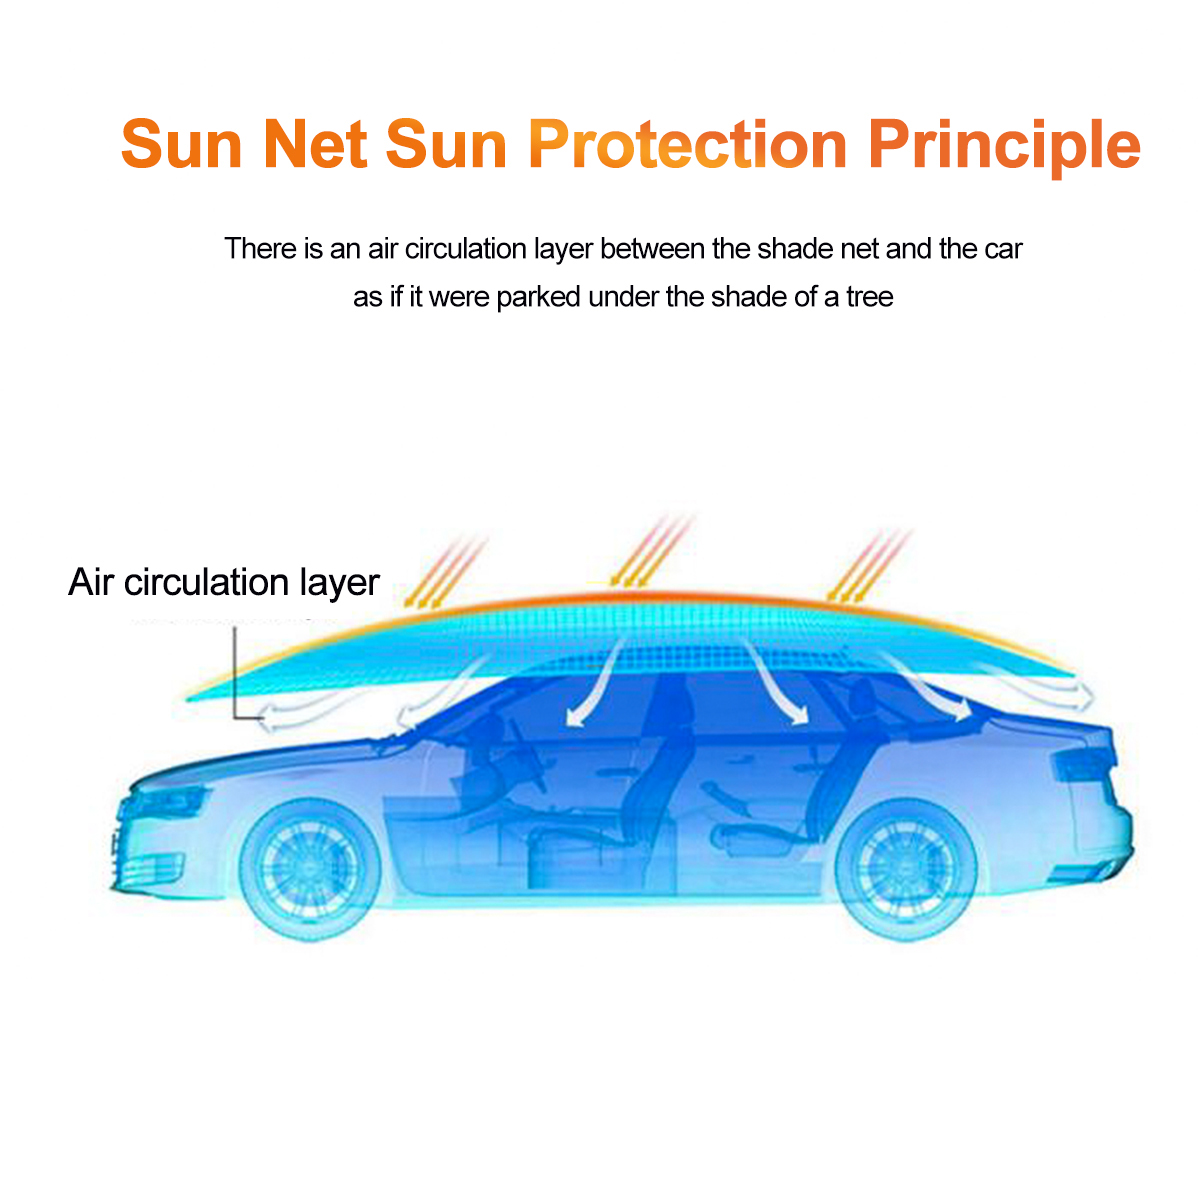 Sunshade-Net-Outdoor-Garden-Sunscreen-Sunblock-Shade-Cloth-Net-PER-Plant-Greenhouse-1768278